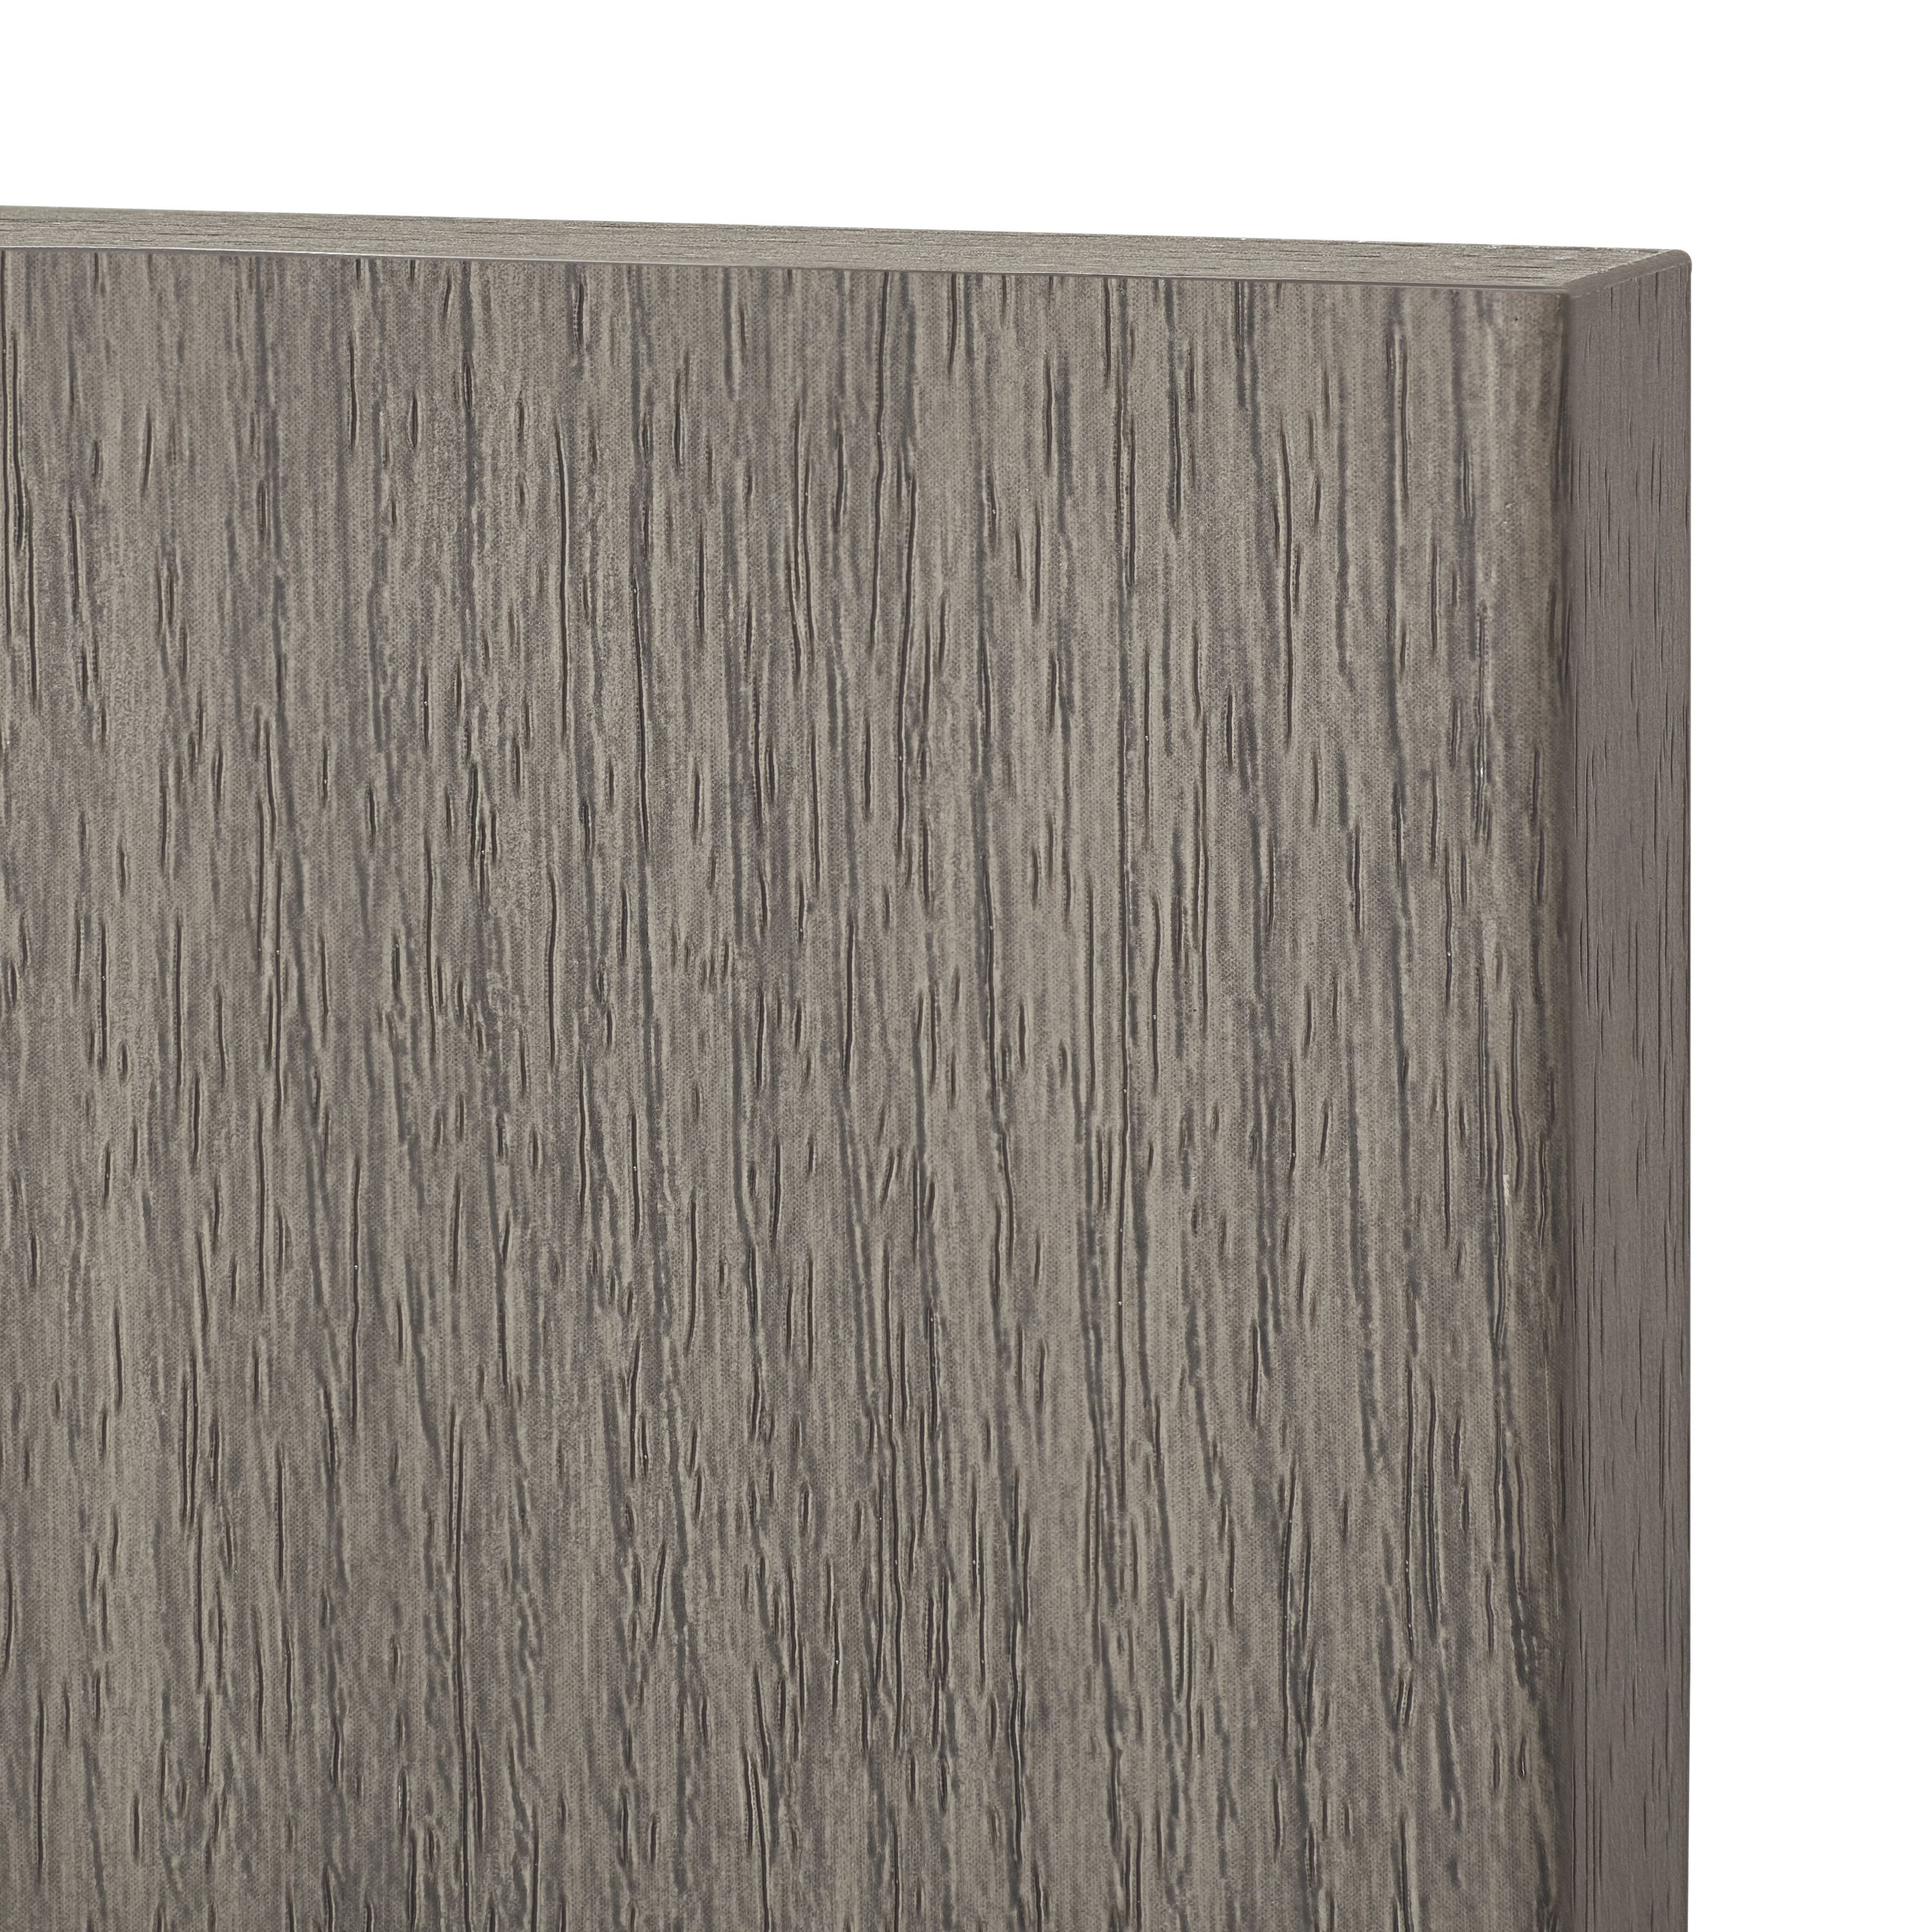 GoodHome Chia Grey oak effect slab Appliance Cabinet door (W)600mm (H)453mm (T)18mm